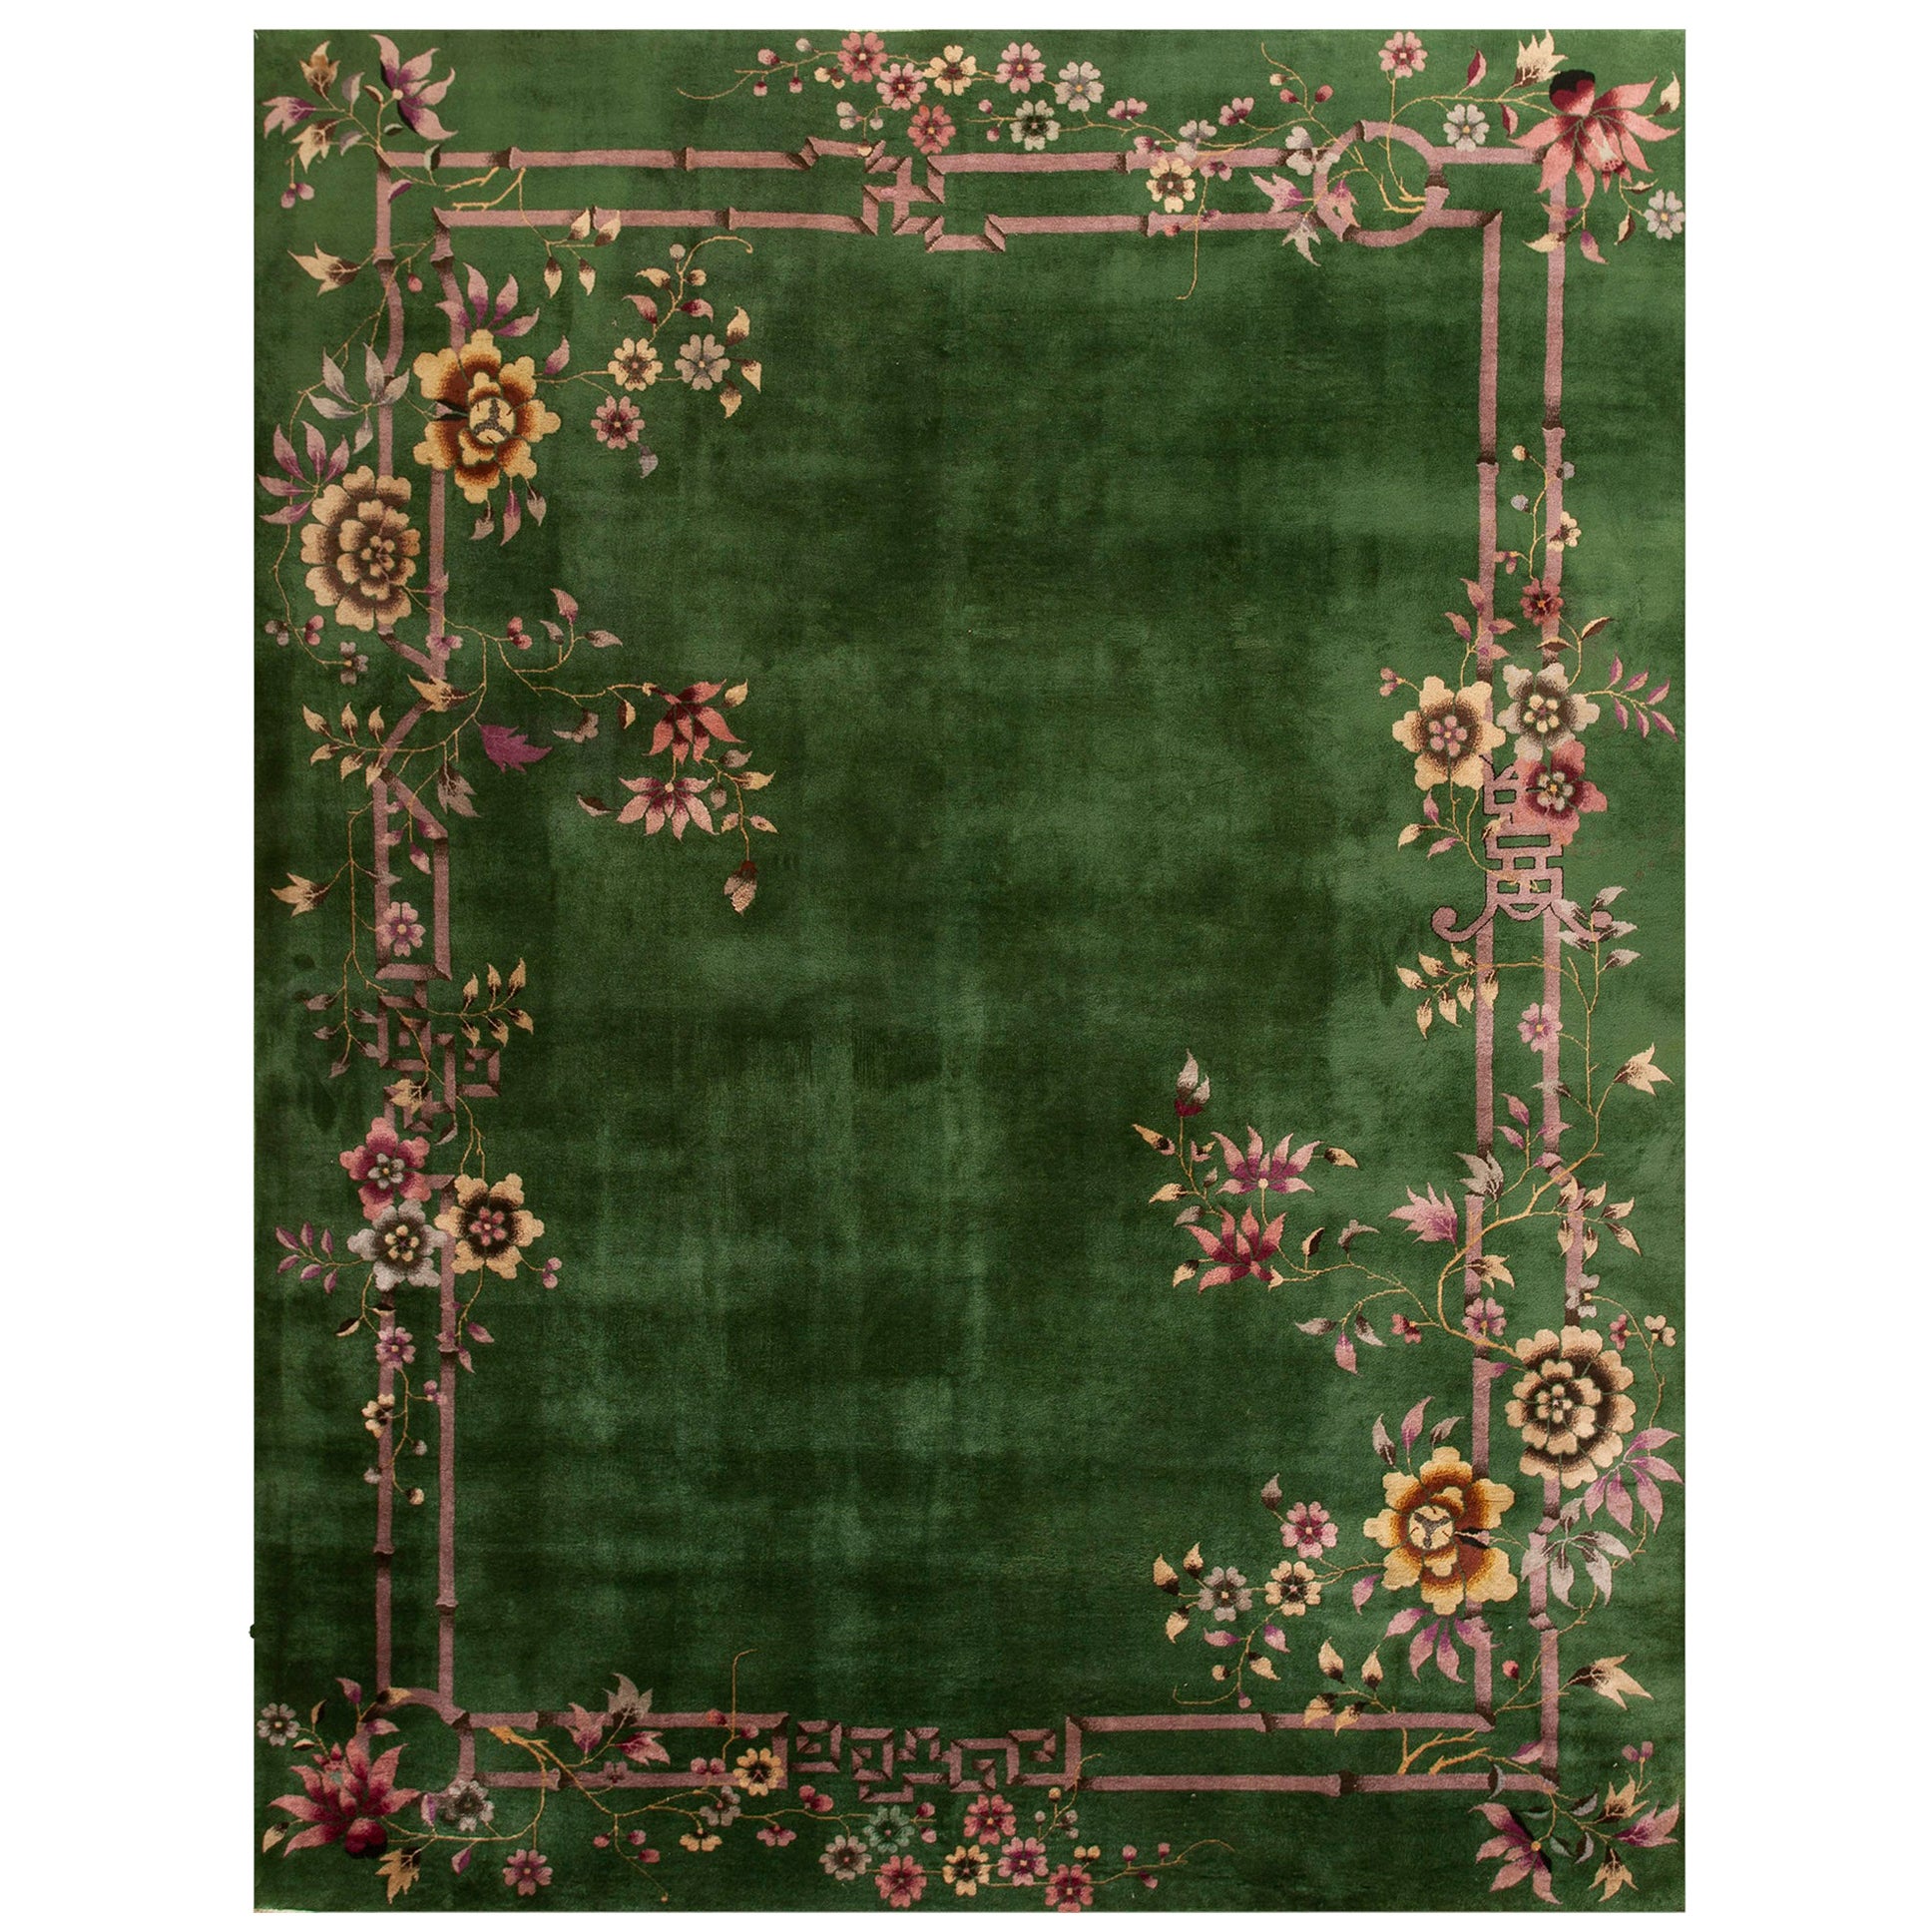 Chinesischer Art-Déco-Teppich aus den 1920er Jahren ( 9' x 11' 6" - 275 x 350 cm)